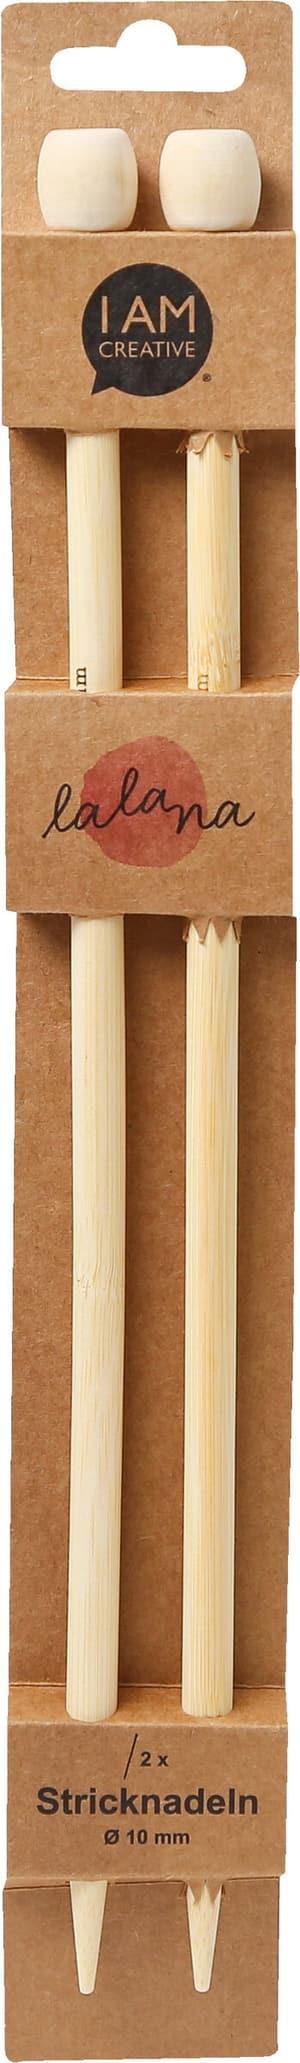 Stricknadeln, Bambus-Stricknadeln für Anfänger und Experten, Natur, ø 10 x 350 mm, 2 Stk.